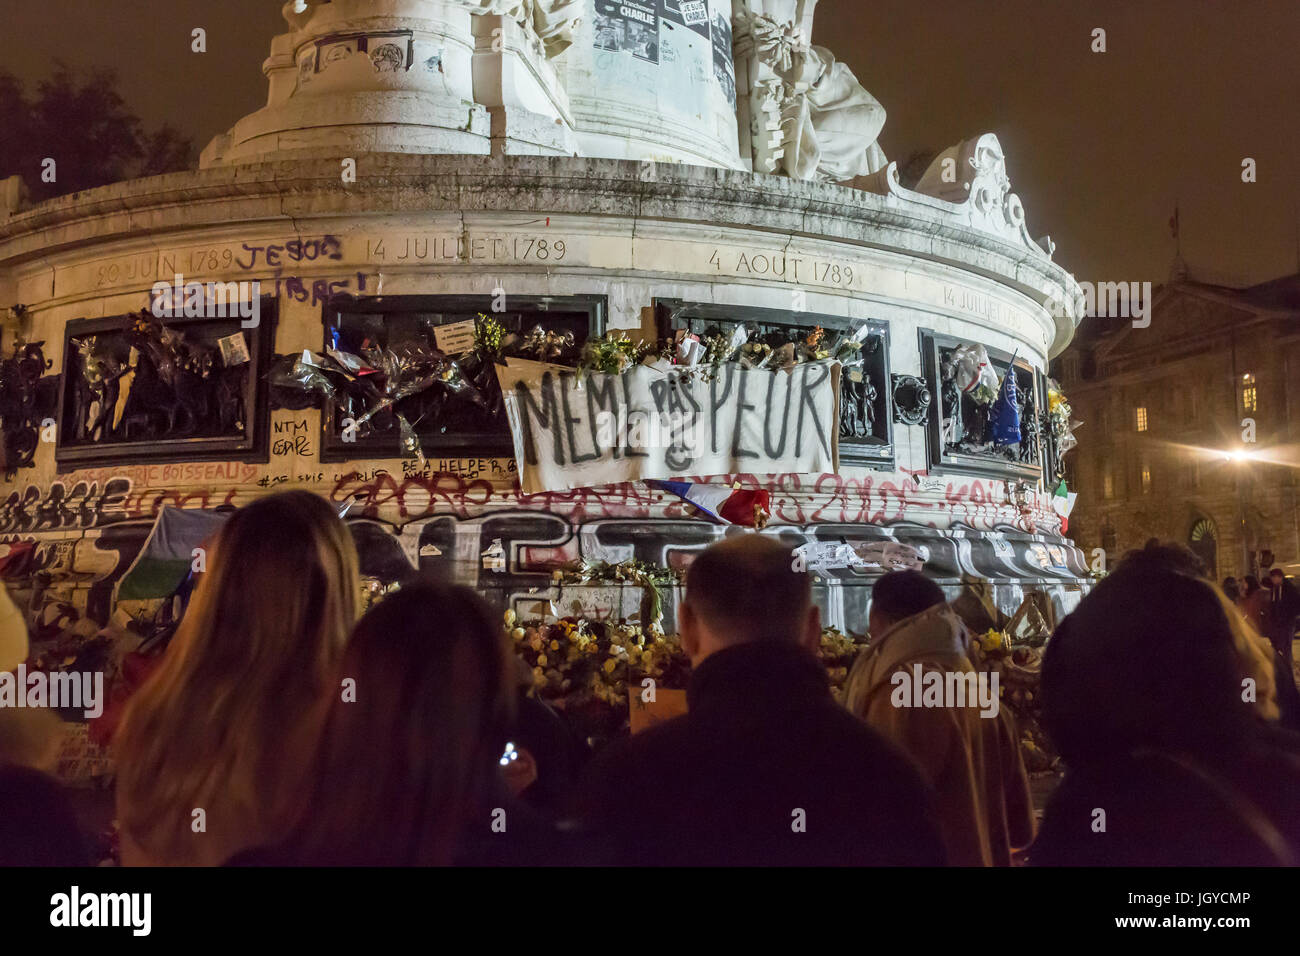 Die Masse an Republique, keine Angst même Pas Peur. Spontane Hommage an die Opfer der Terroranschläge in Paris, den 13. November 2015. Stockfoto